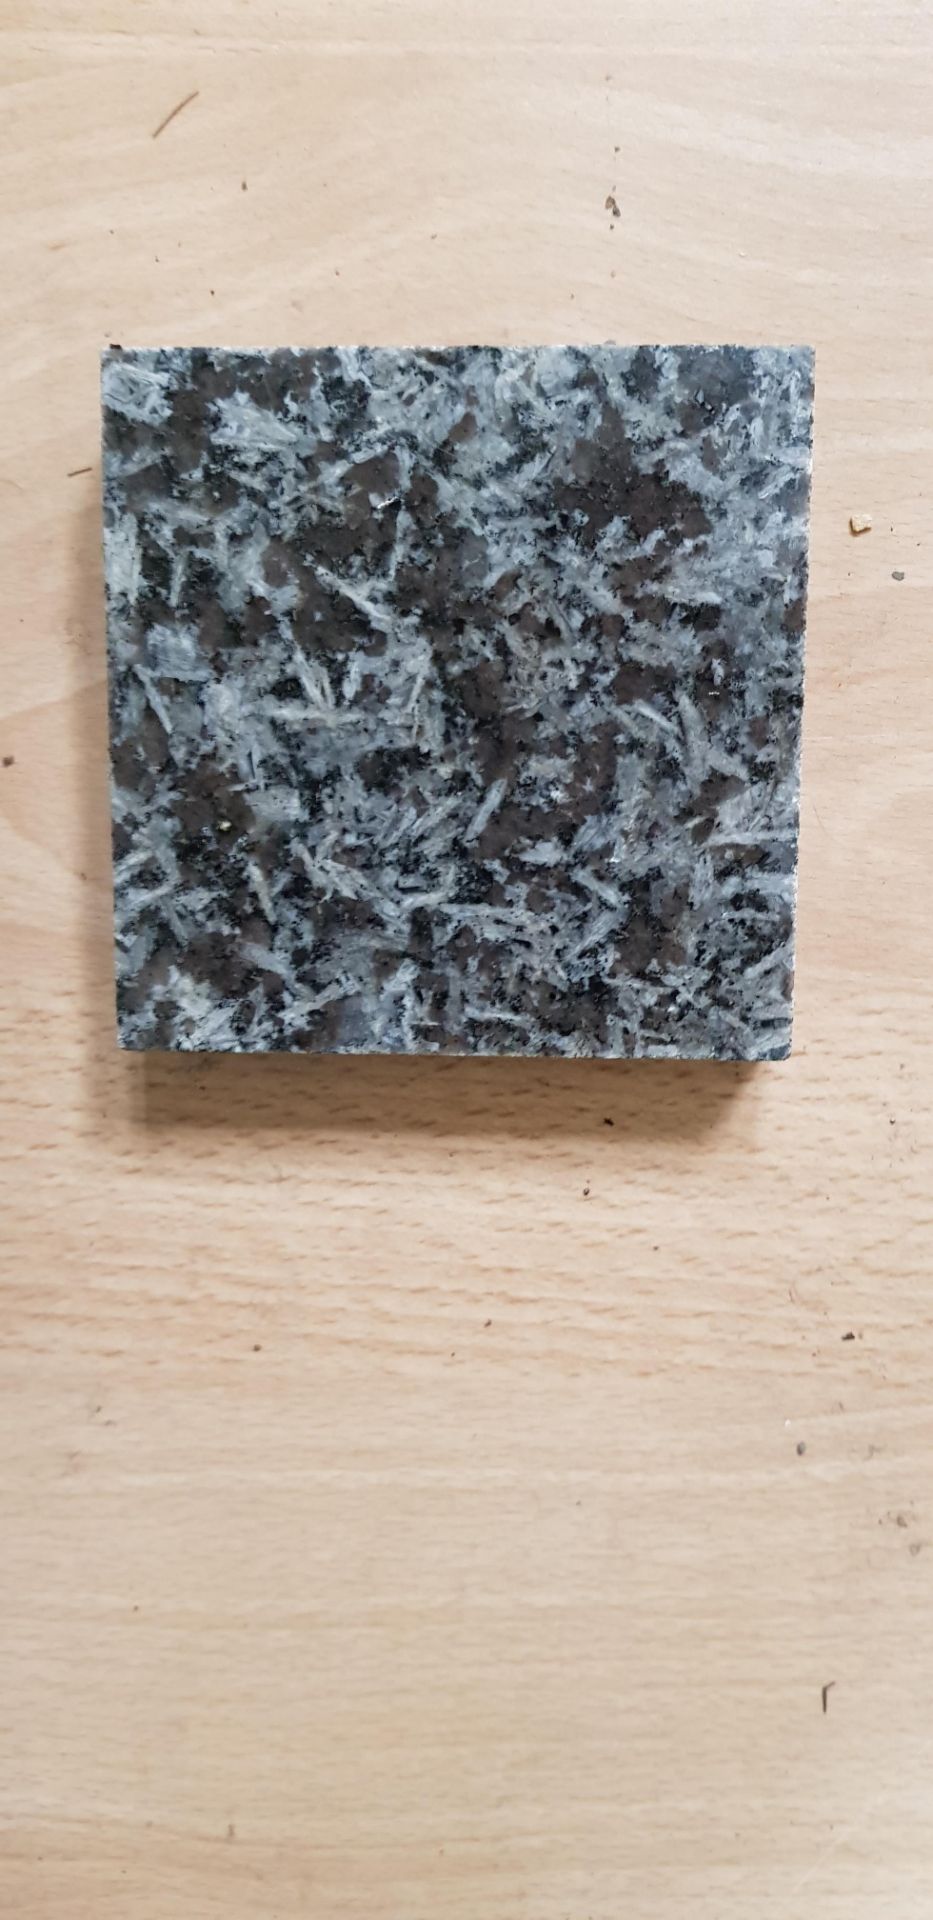 80-90 M2 Granite Tiles - Image 2 of 2